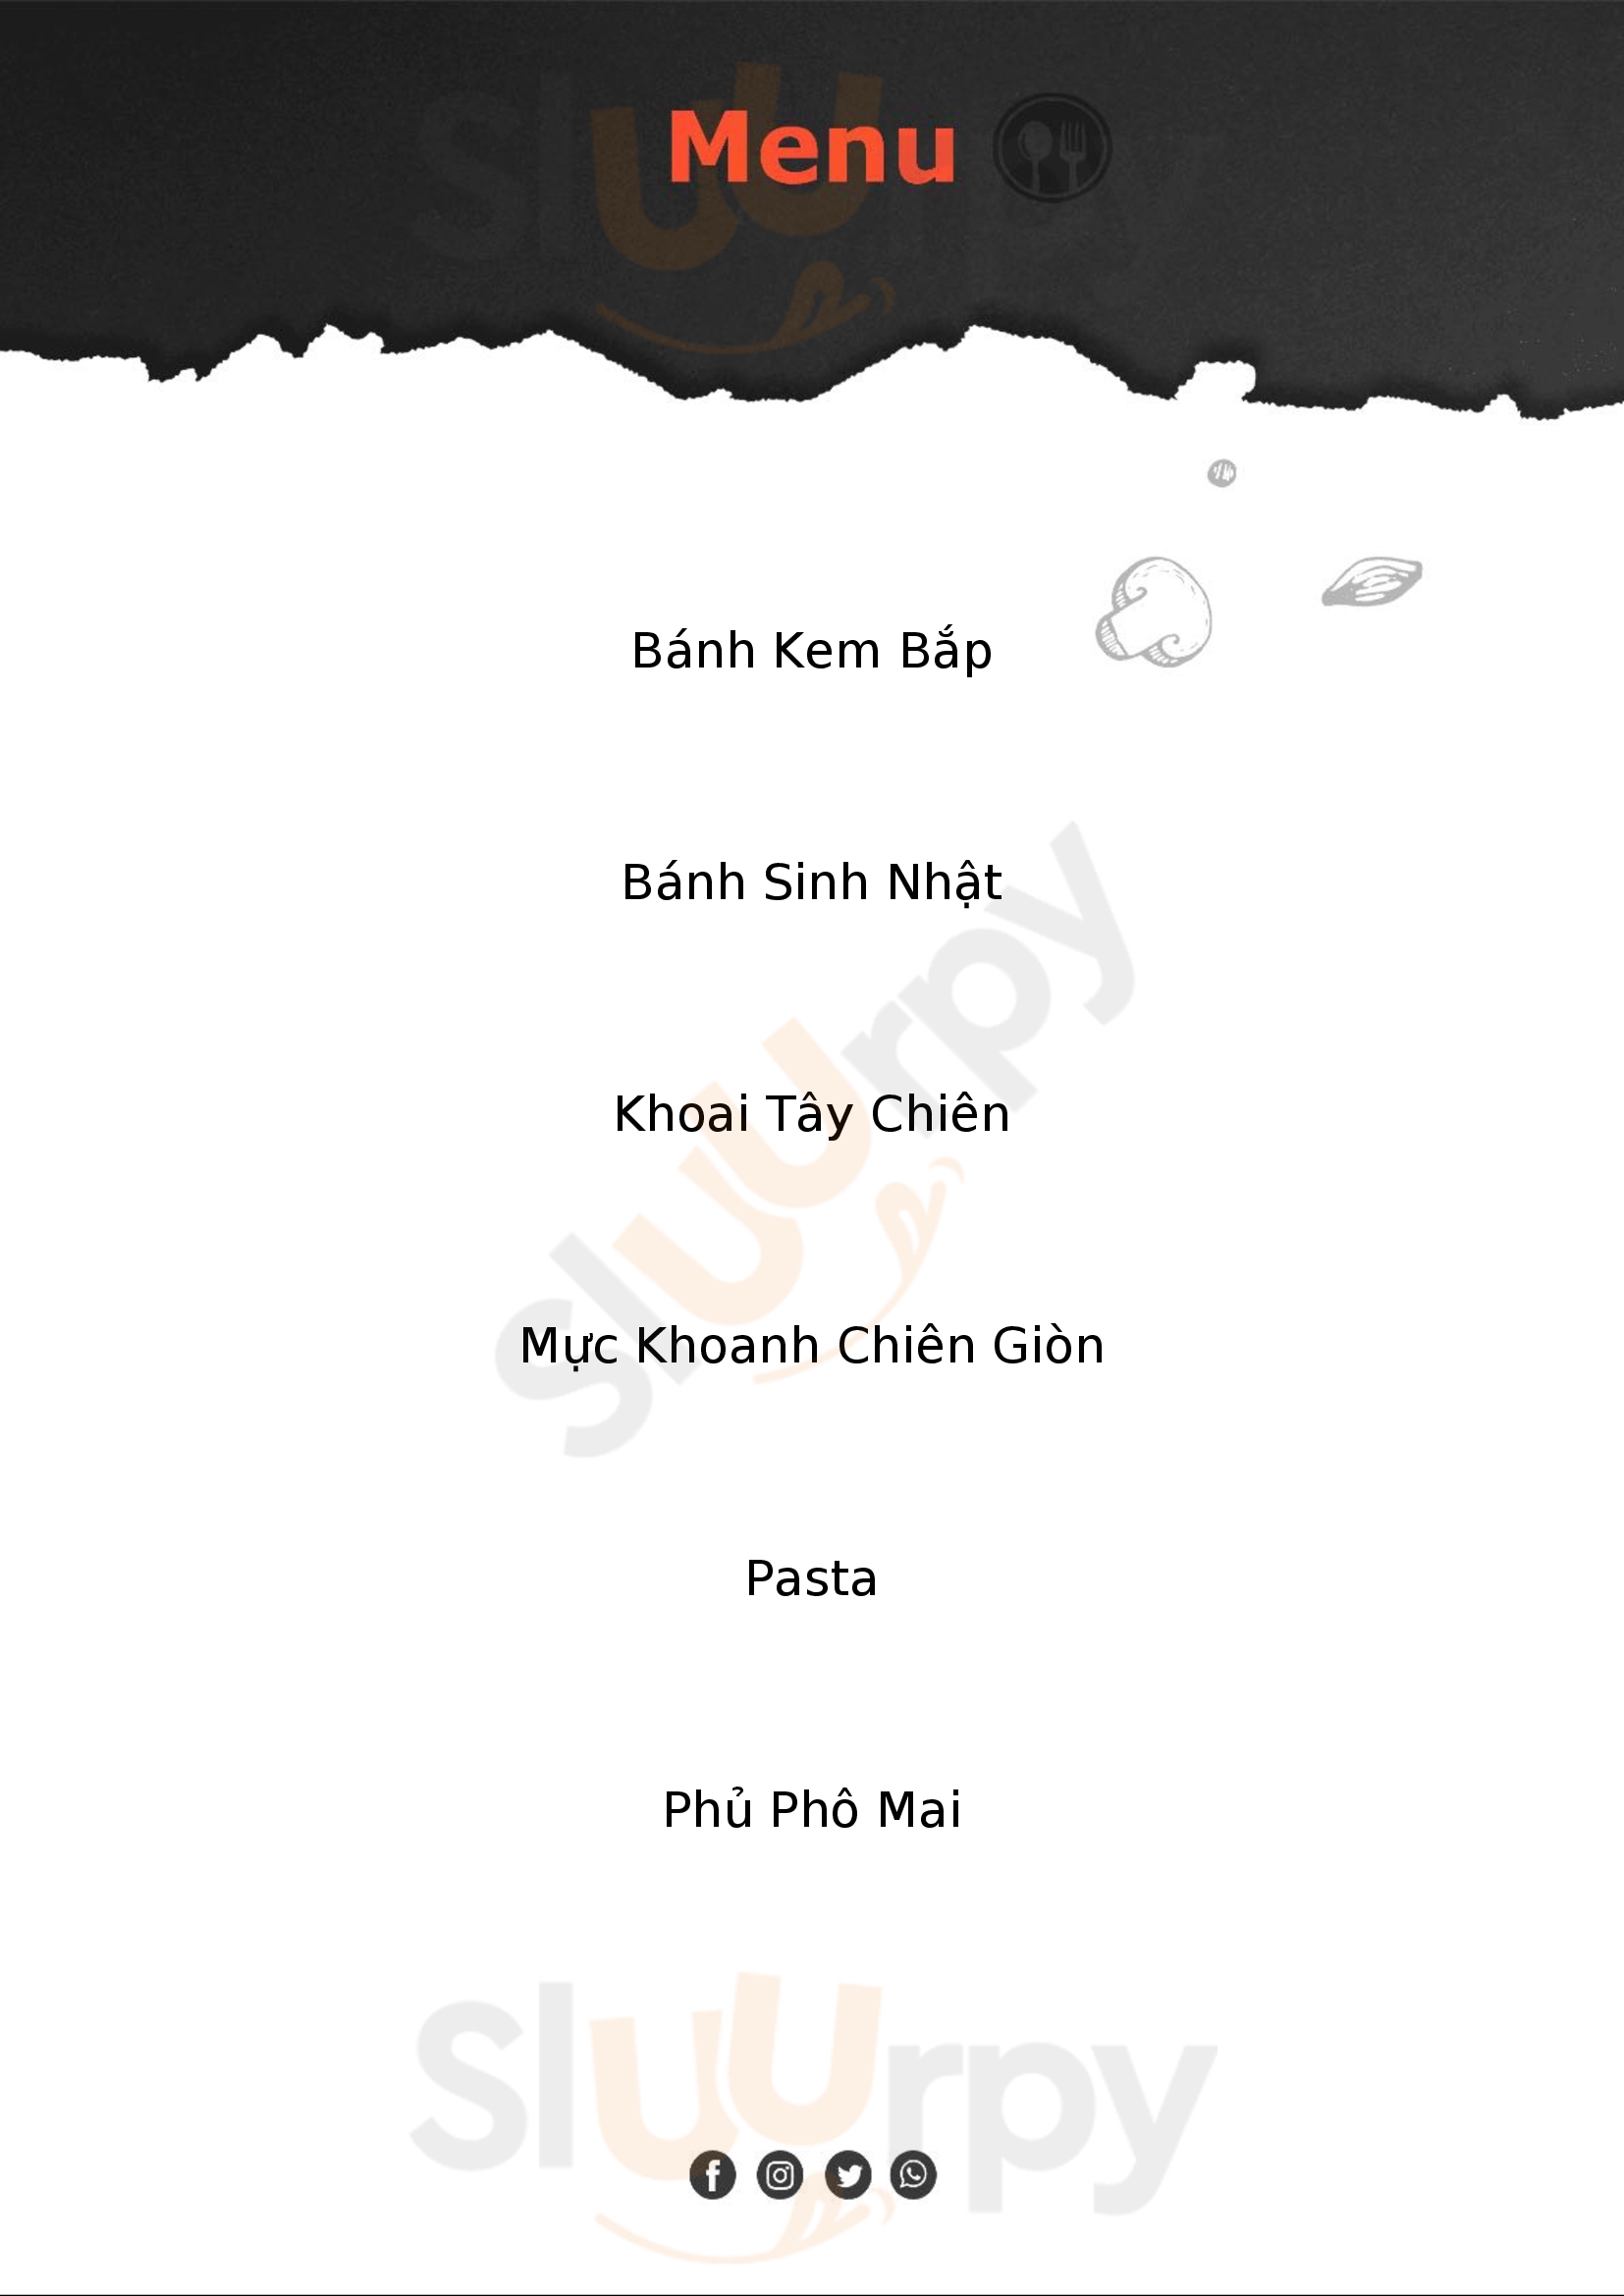 The Pizza Company Thành phố Hồ Chí Minh Menu - 1